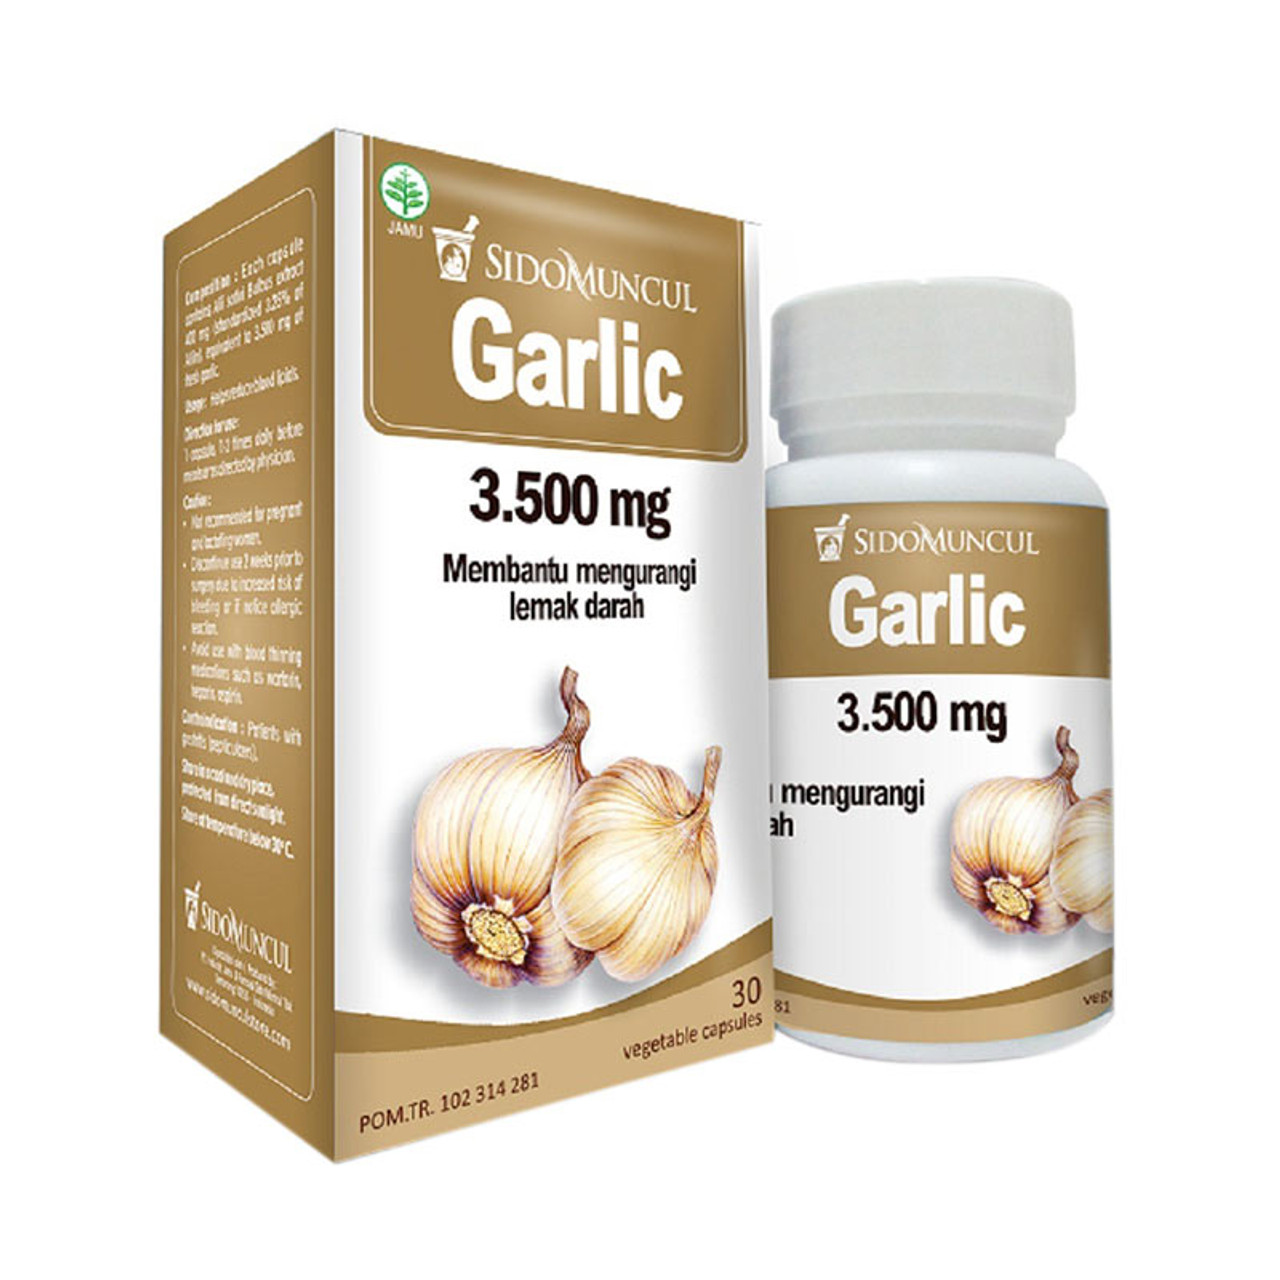  Sido Muncul Garlic 30 Kapsul Obat Kolesterol dan Darah Tinggi